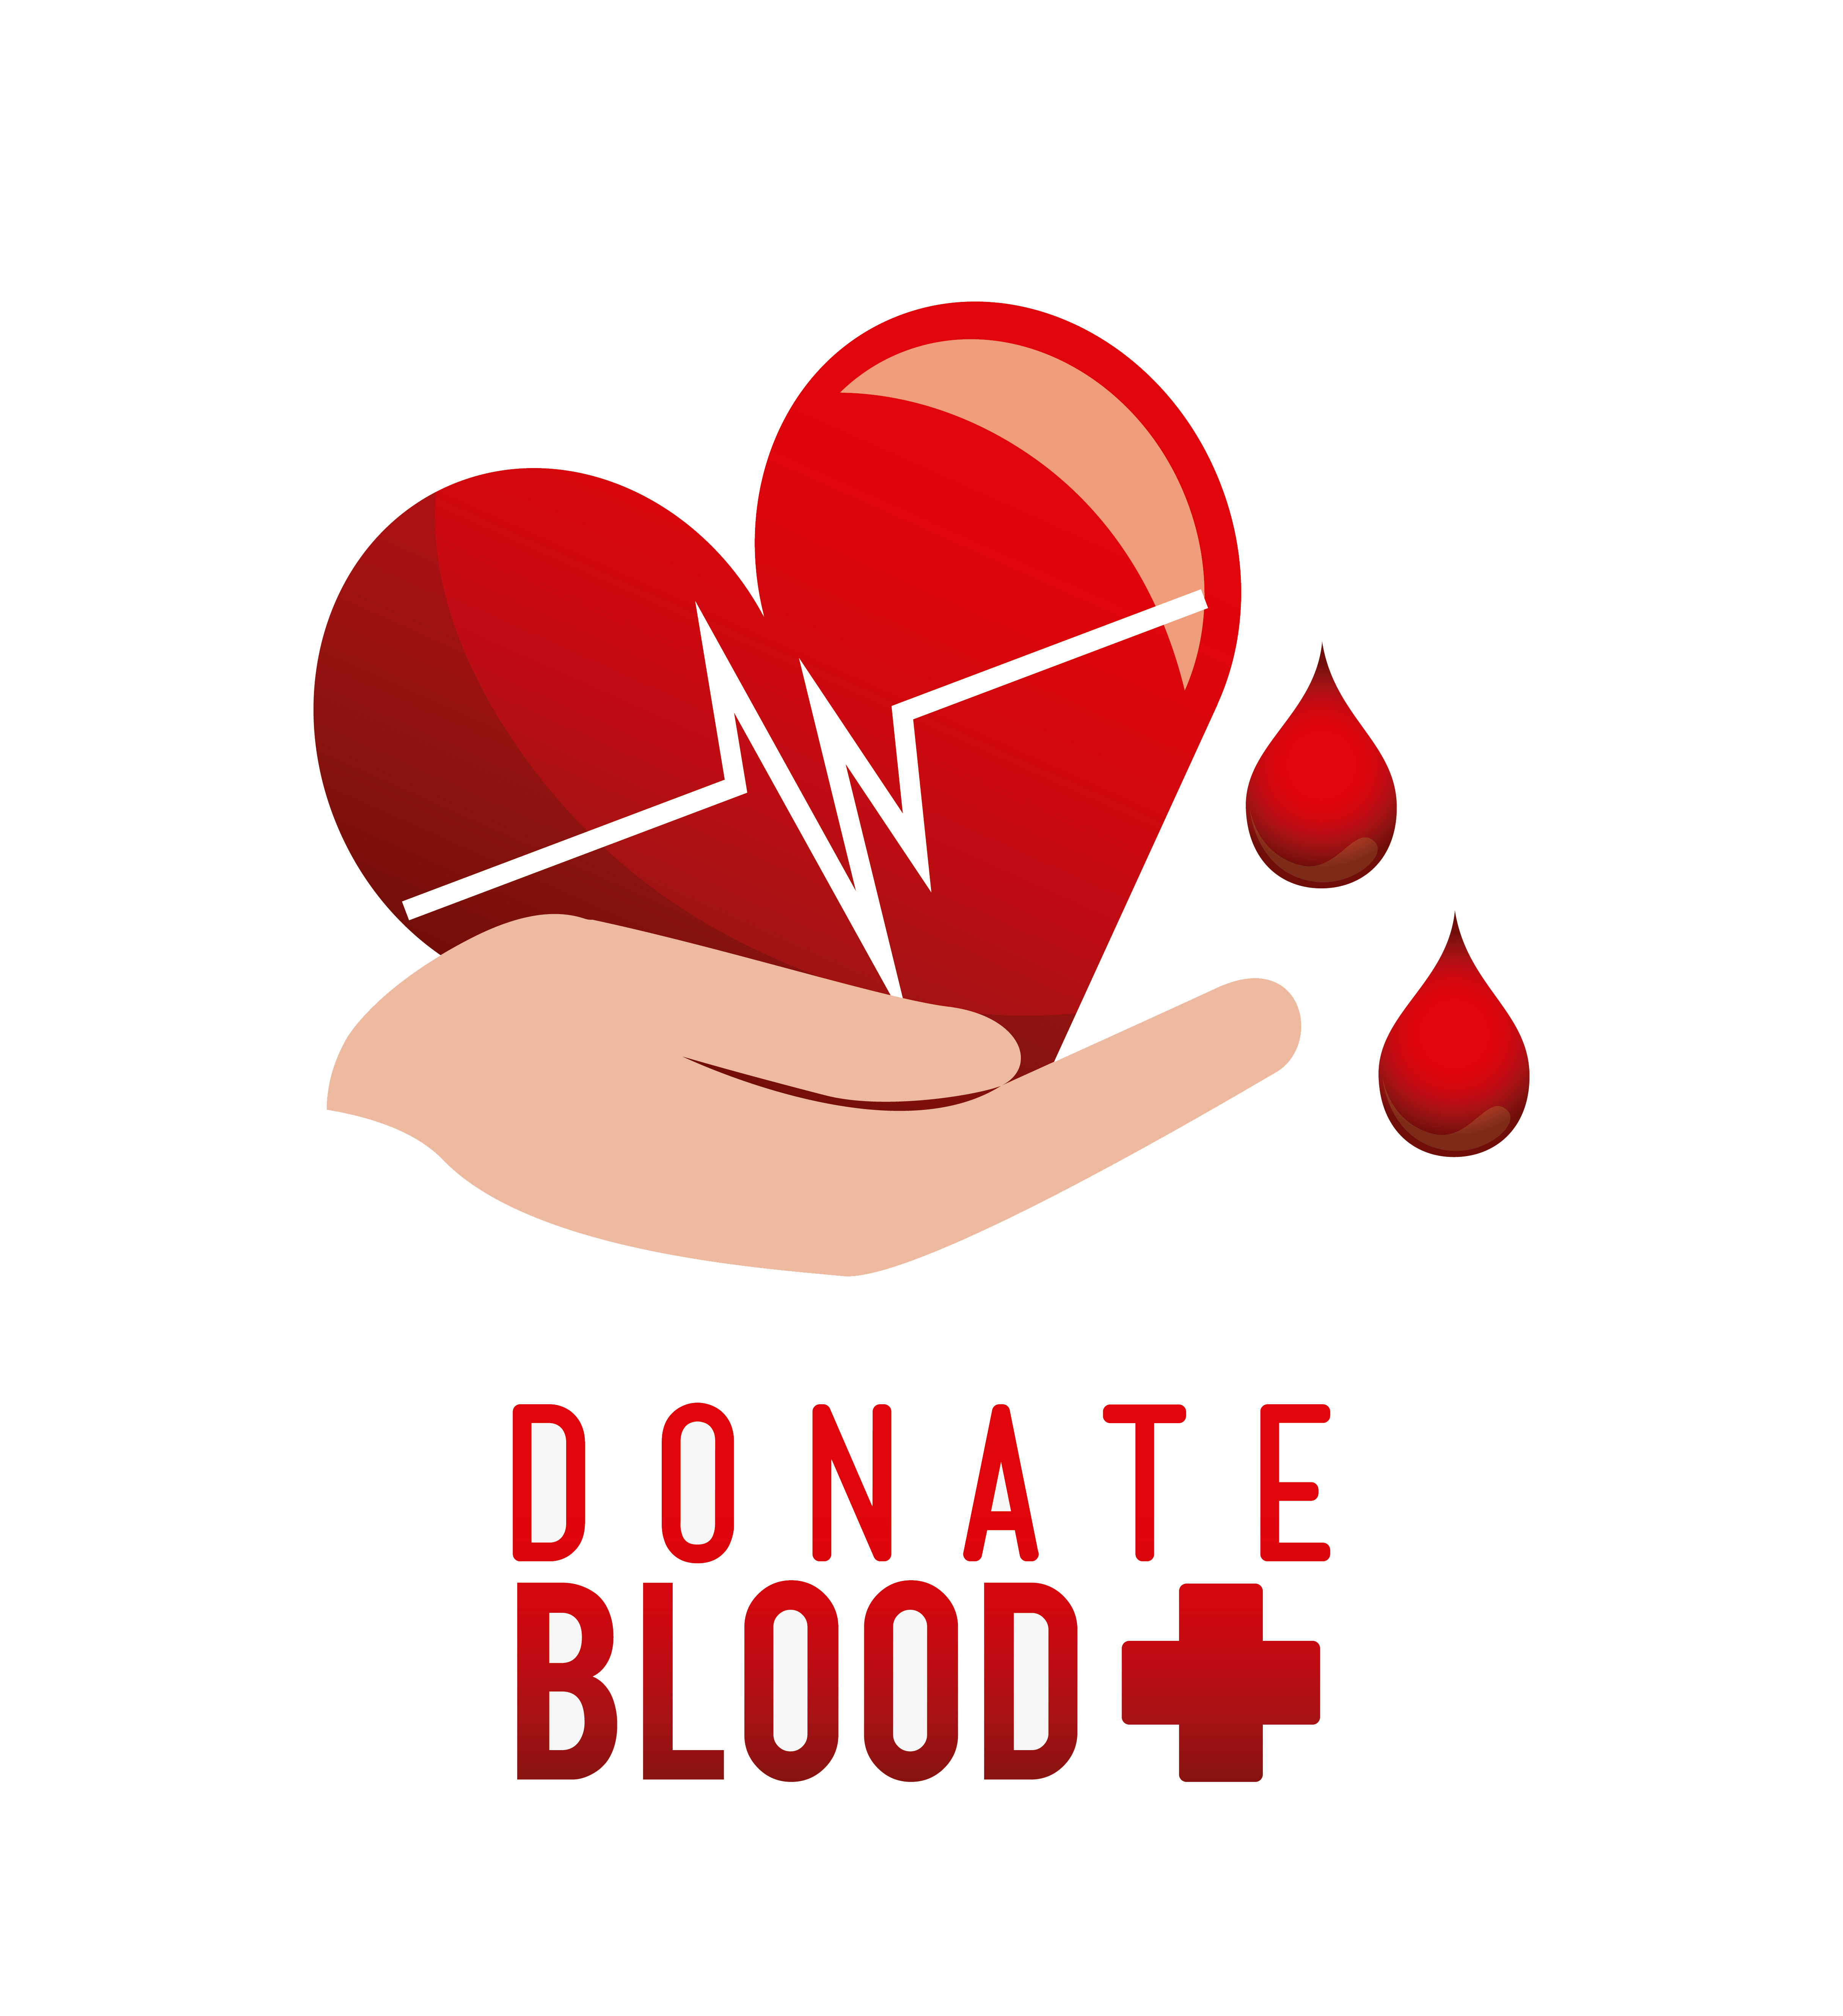 Донор. Blood donation донорство. Донор логотип. Логотип донорства крови. День донора символ.